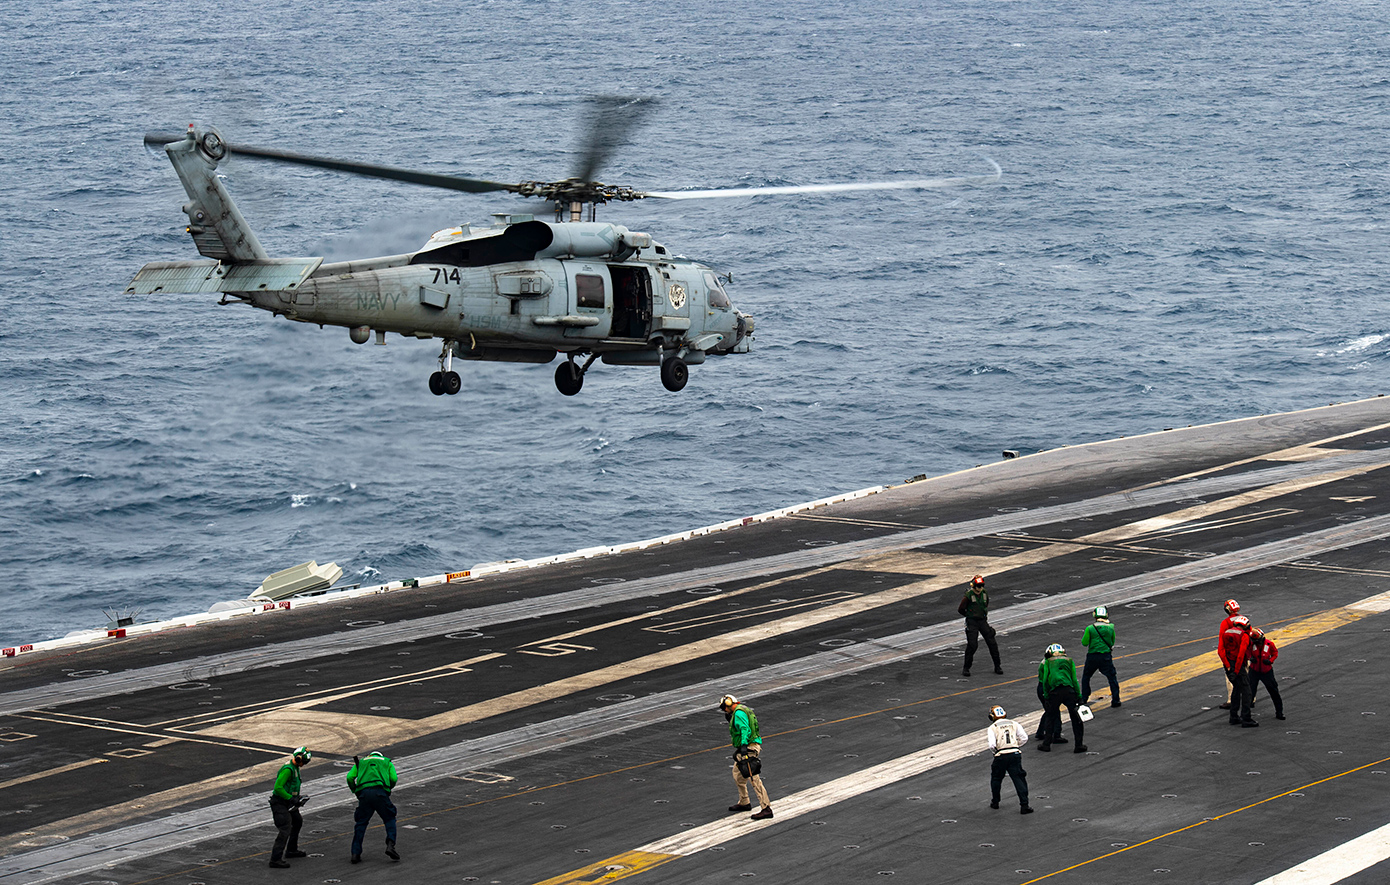 Τρία νέα ελικόπτερα Romeo MH-60R Seahawk παραλαμβάνει το Πολεμικό Ναυτικό